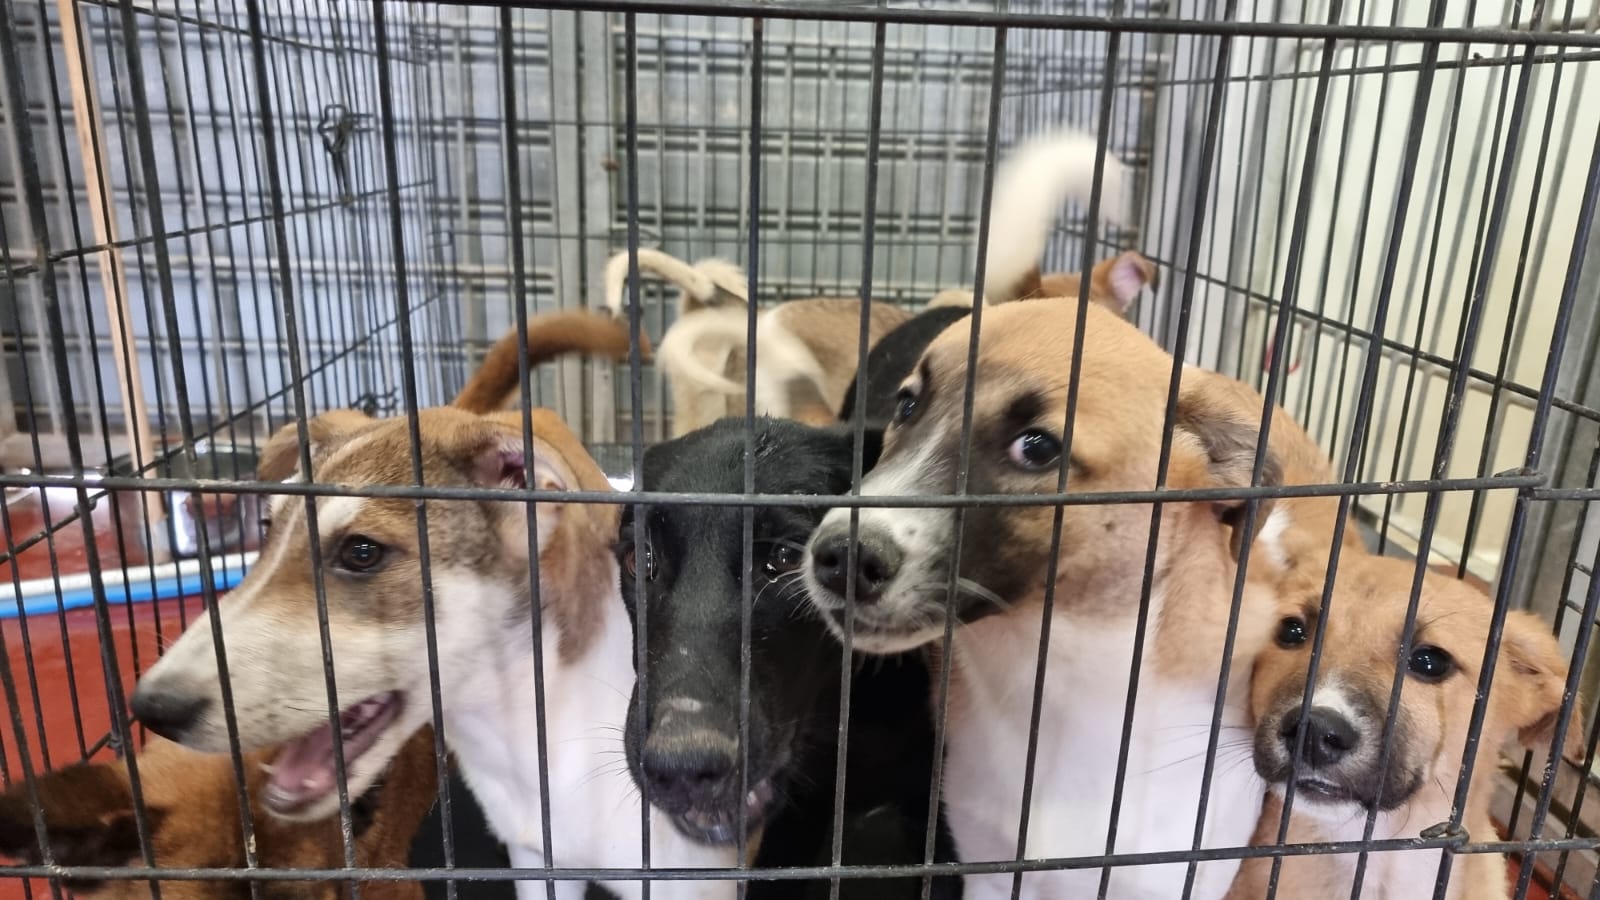 עשרה כלבים מגזע כנעני מערד הוטסו לפני מספר שבועות לאימוץ בקנדה